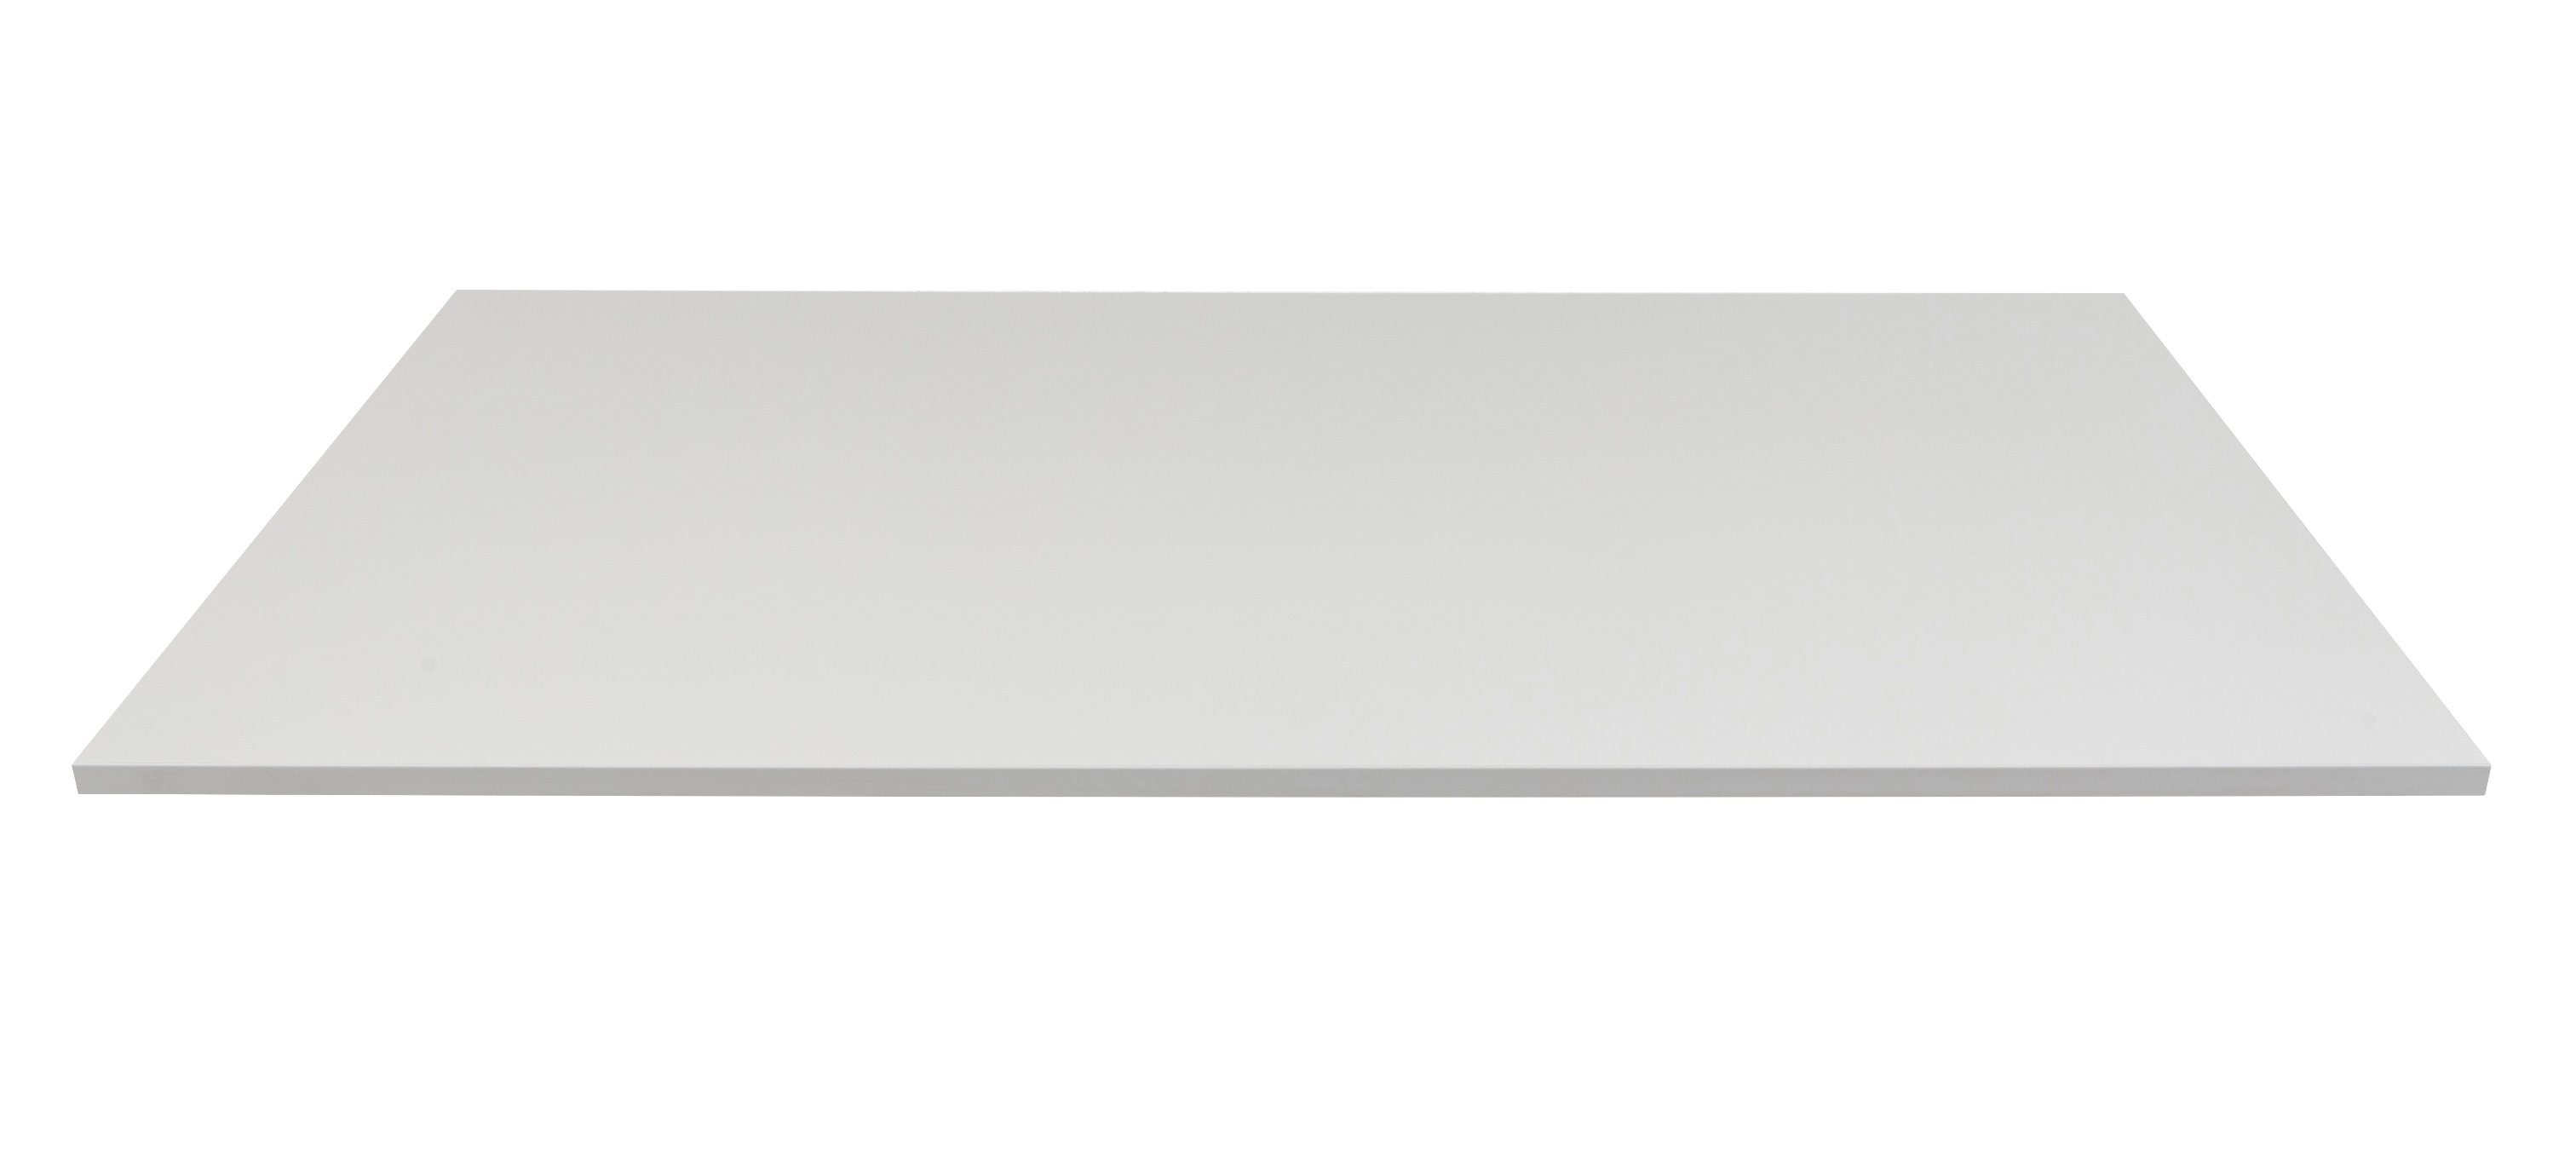 Furni24 Tischplatte Tischplatten grau RAL 7035 140 x 70 x 2,5 cm, TÜV/GS geprüft - einfache Montage - sehr stabil